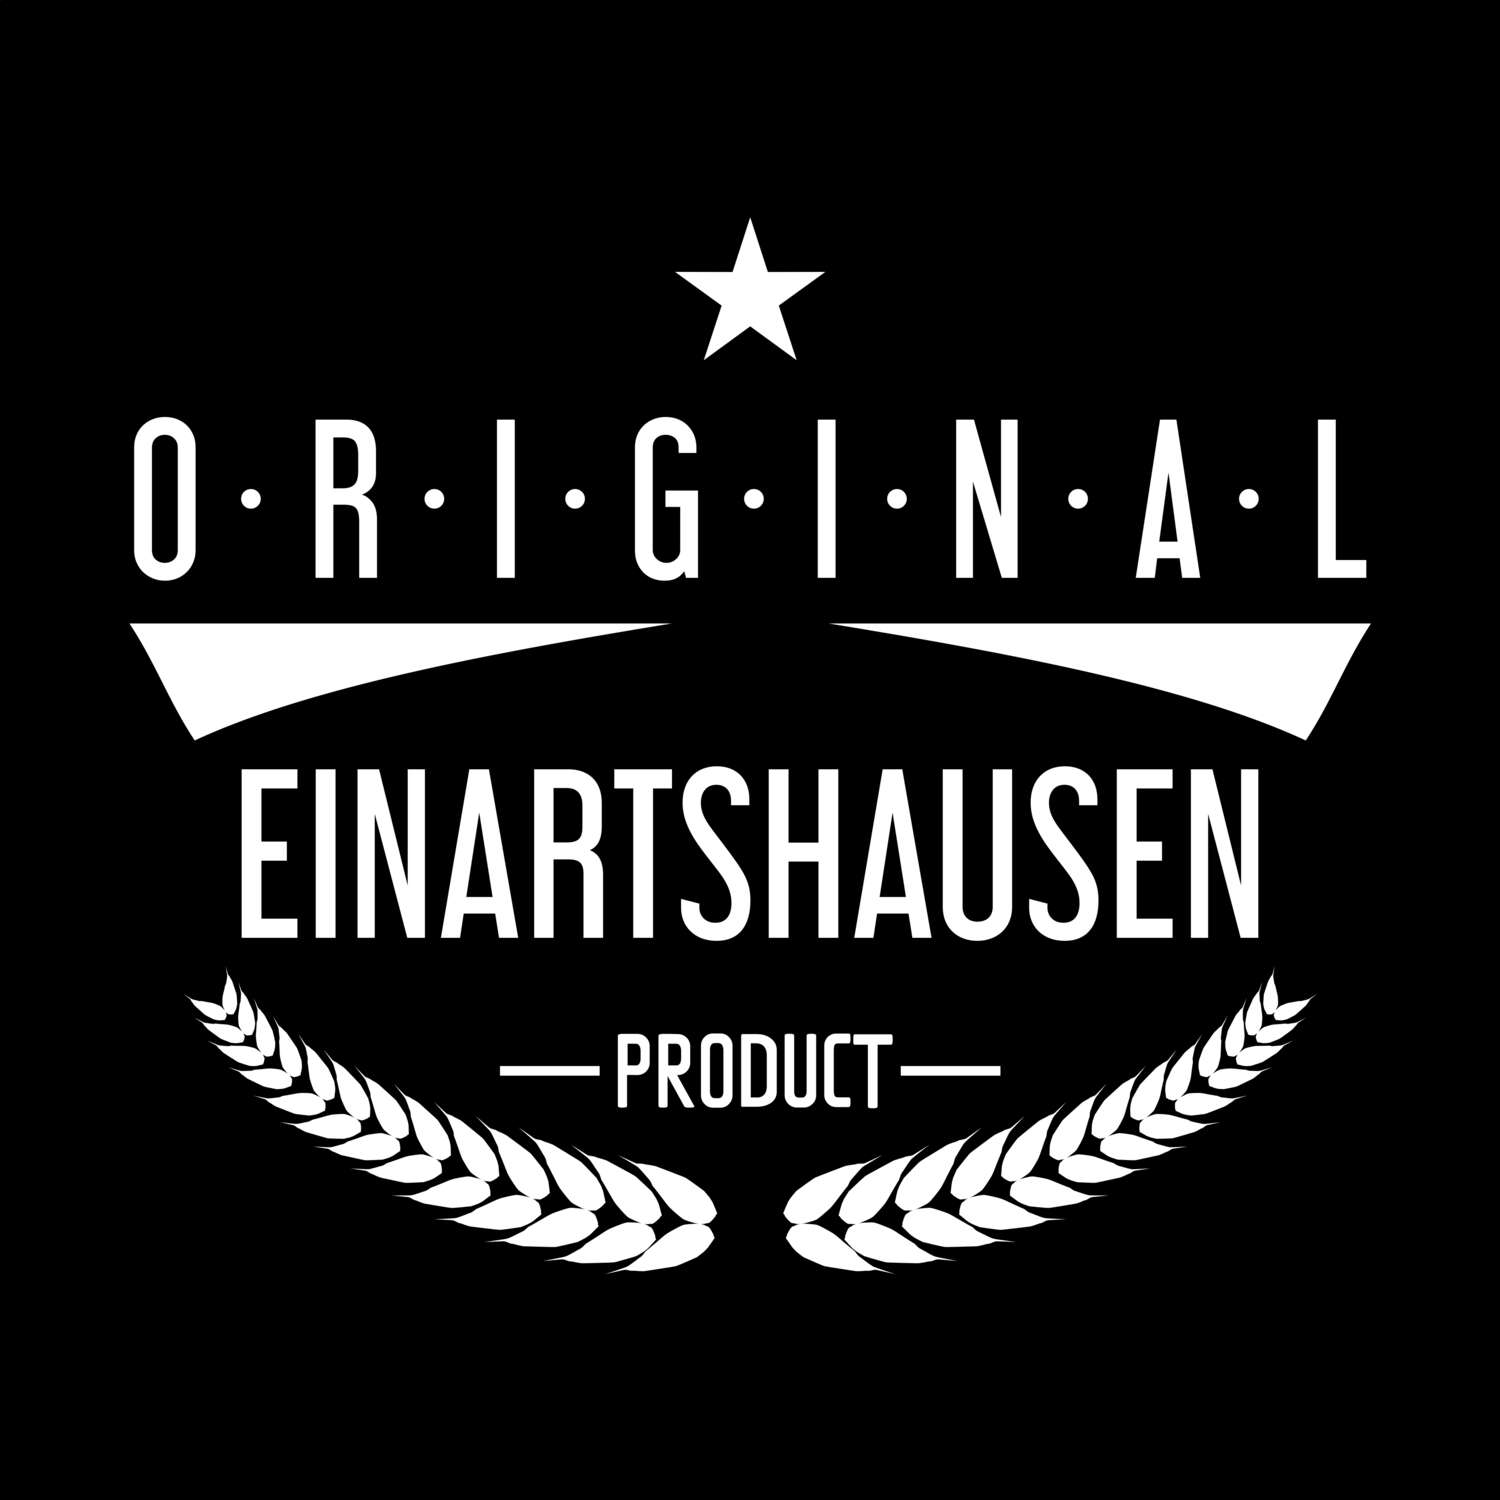 Einartshausen T-Shirt »Original Product«